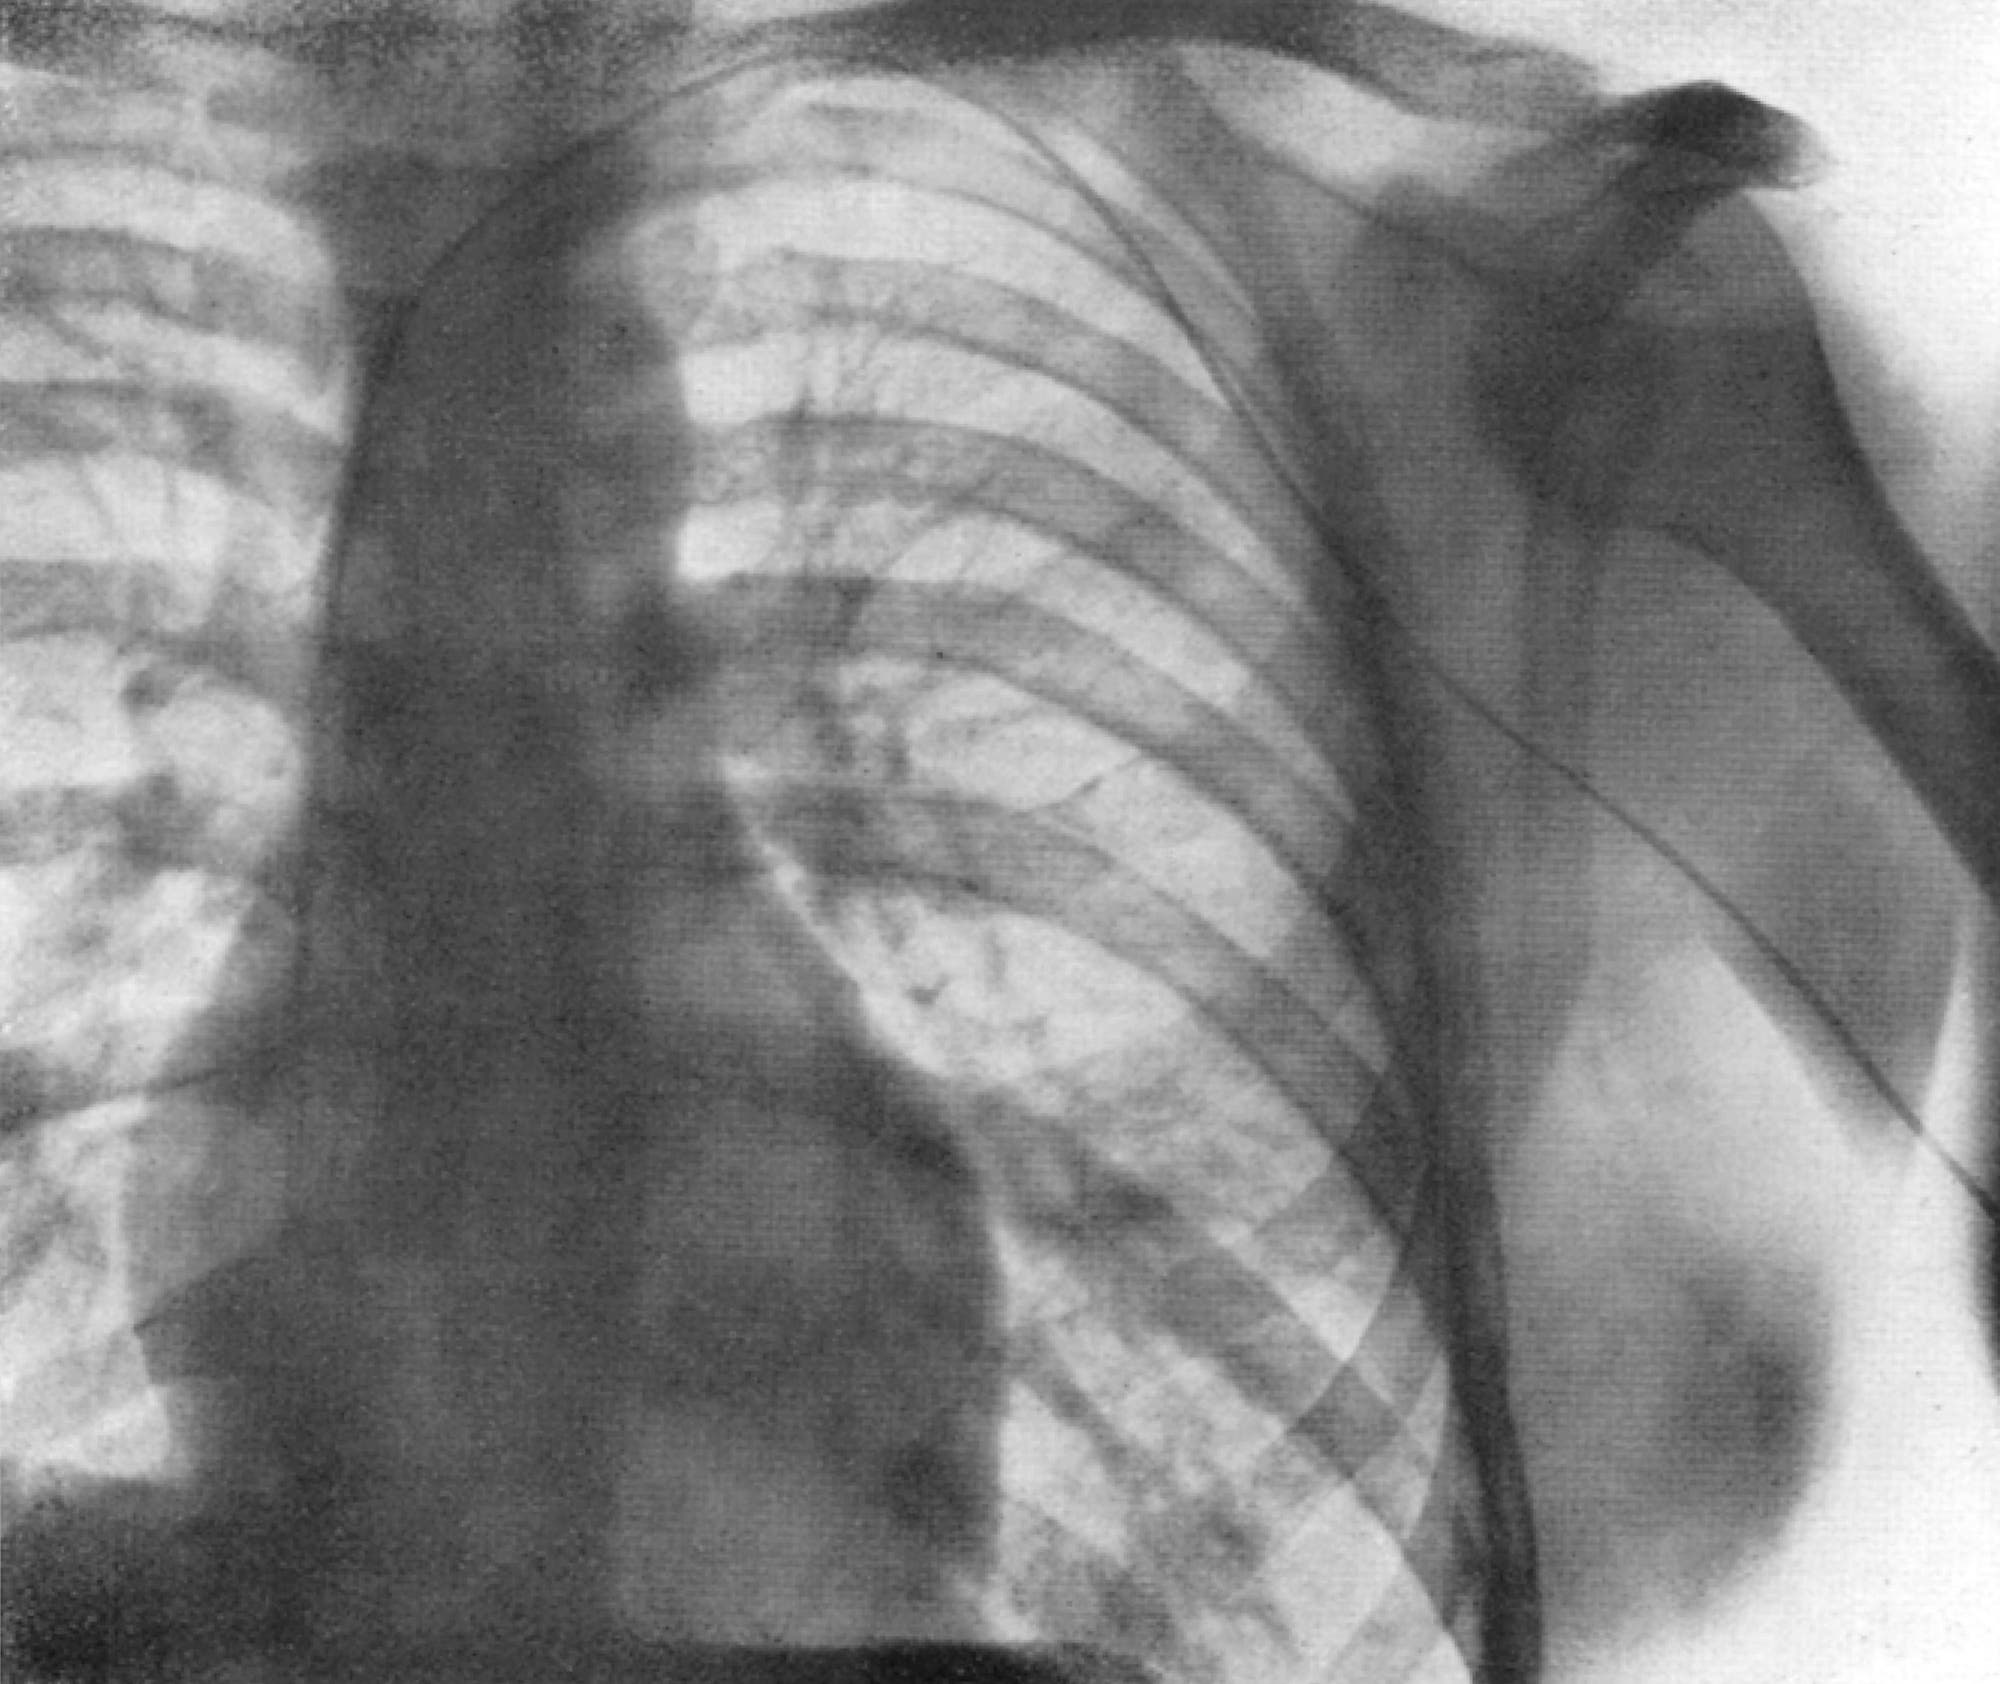 Röntgenaufnahme des eingeführten Katheters im Herzen von Werner Forßmann